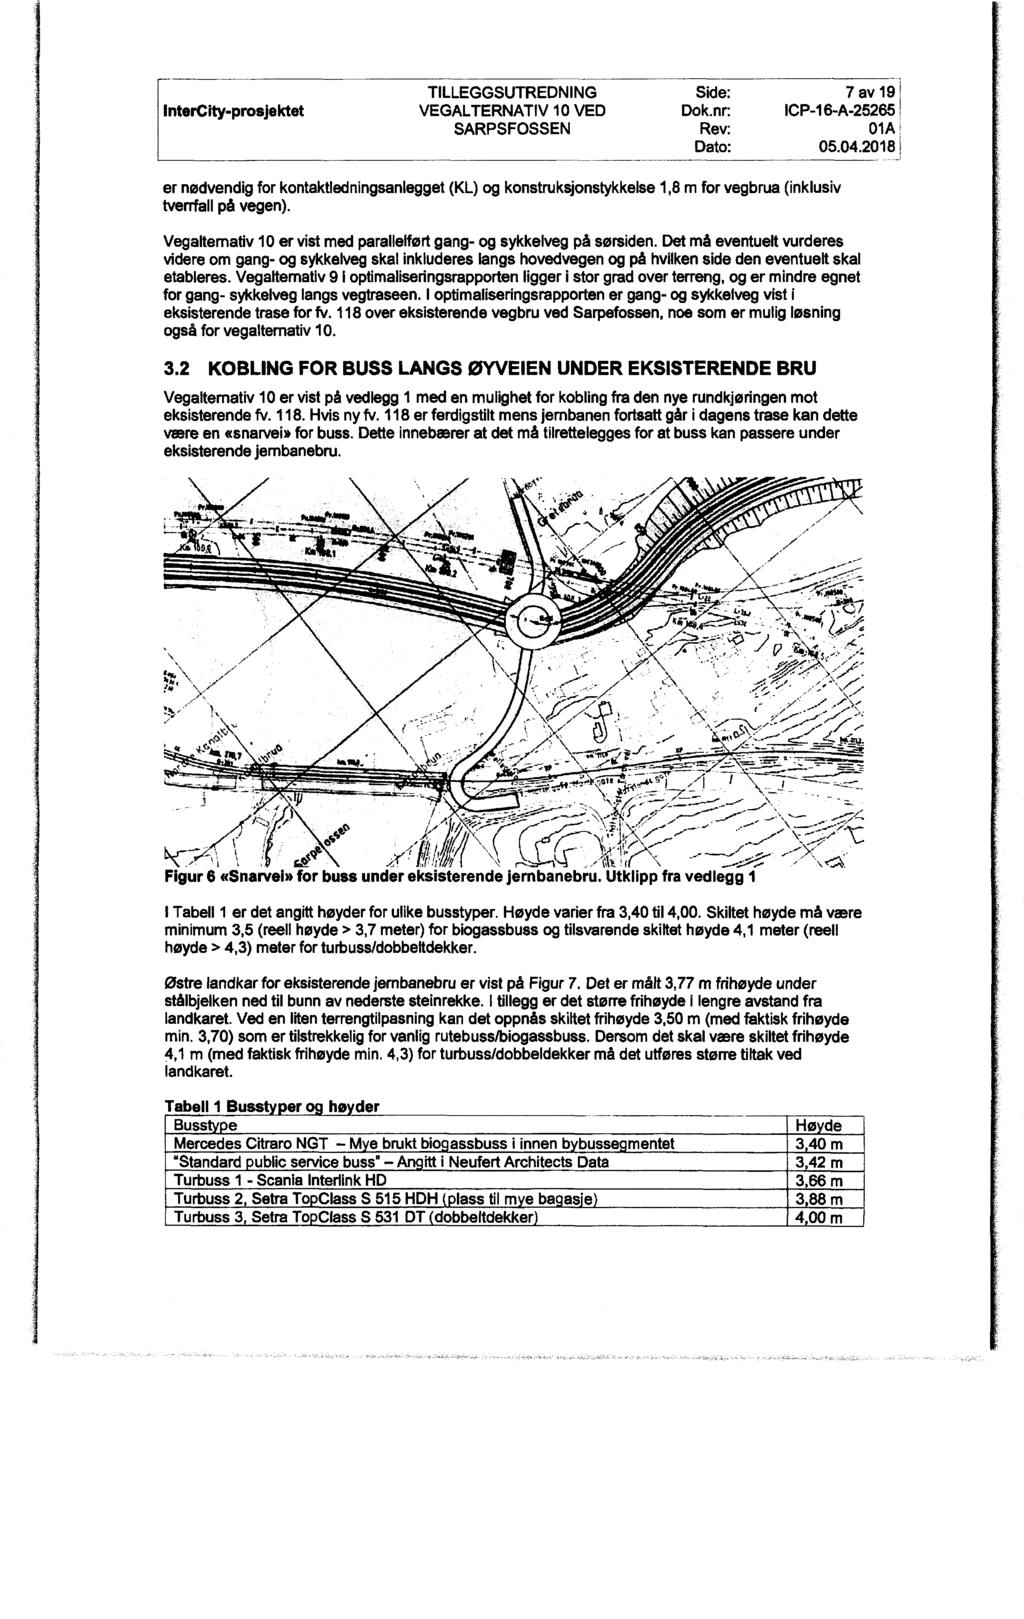 Intercity-prosjektet TILLEGGSUTREDNING Side: 7 av 19 f VEGALTERNATIV 1o ven Dok.nr: ICP-16 A-25265, sarpsfossen Rev: 01A i Date: 05.04.